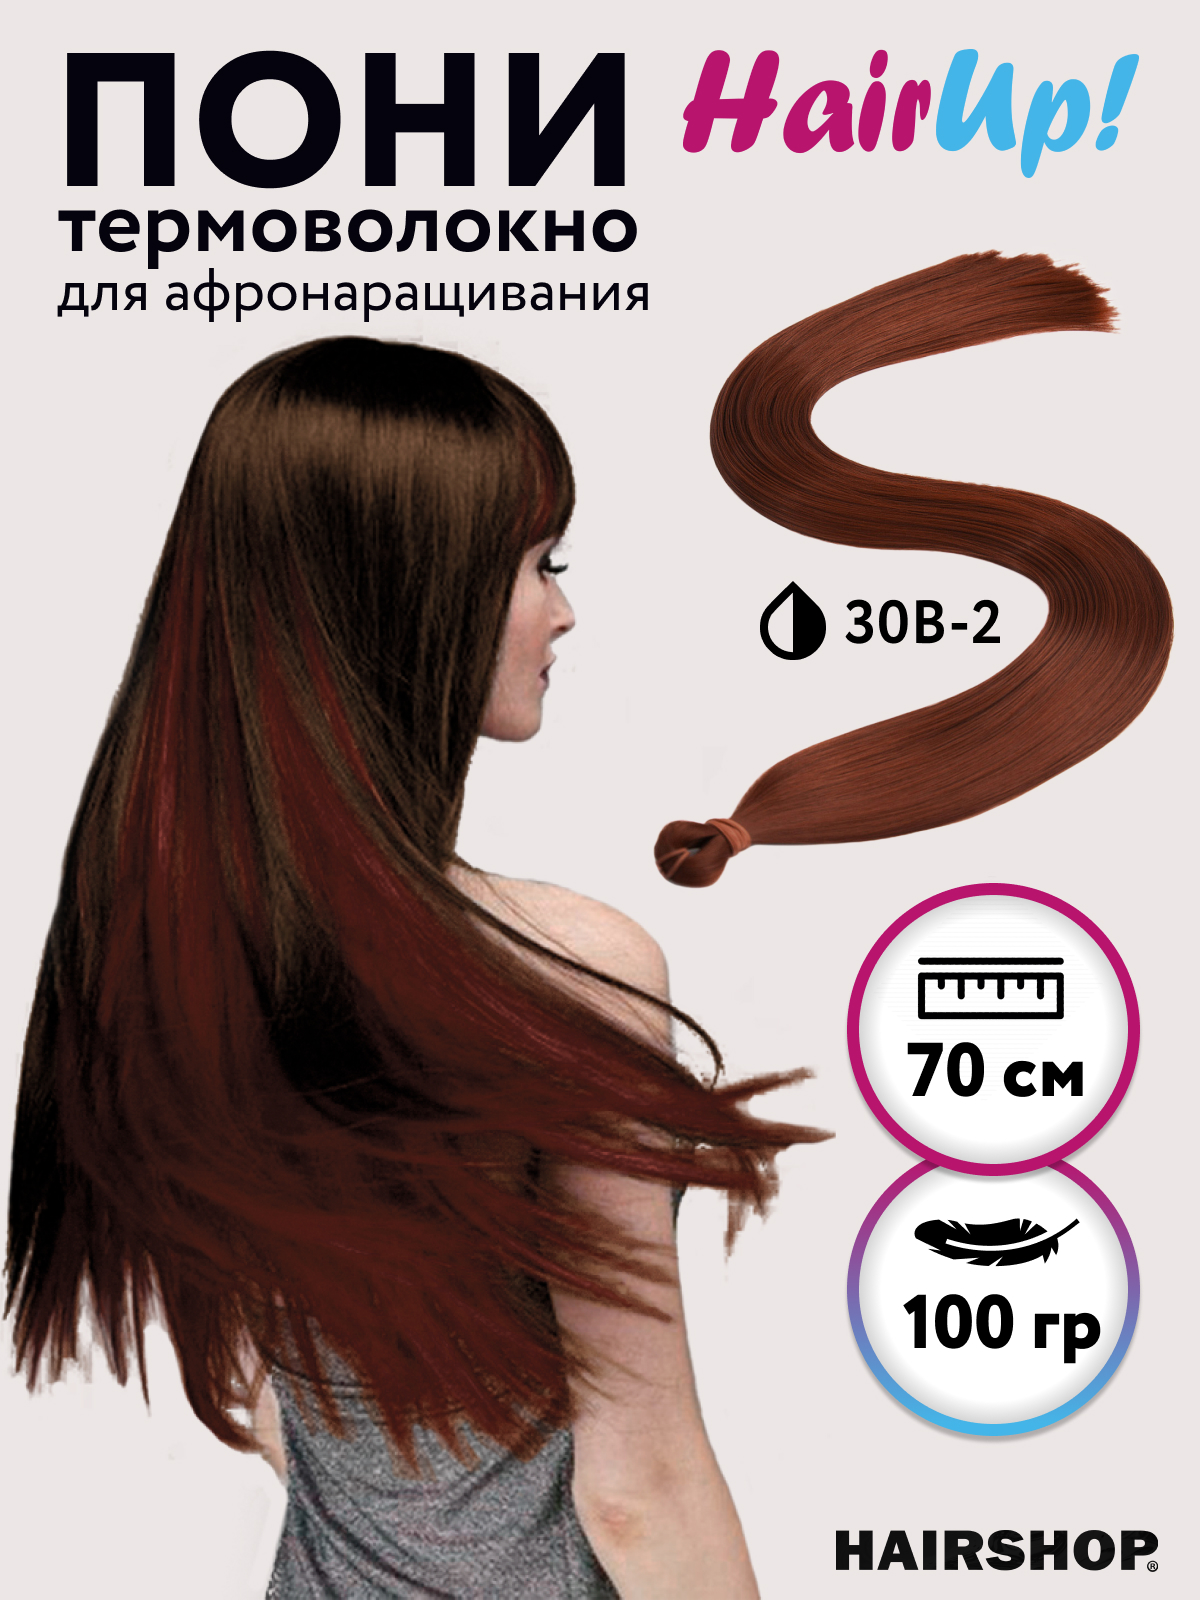 Канекалон Hairshop Пони HairUp для точечного афронаращивания прямые 30B-2 1,4м 100г канекалон hairshop пони hairup для точечного афронаращивания осенний листопад 1 4м